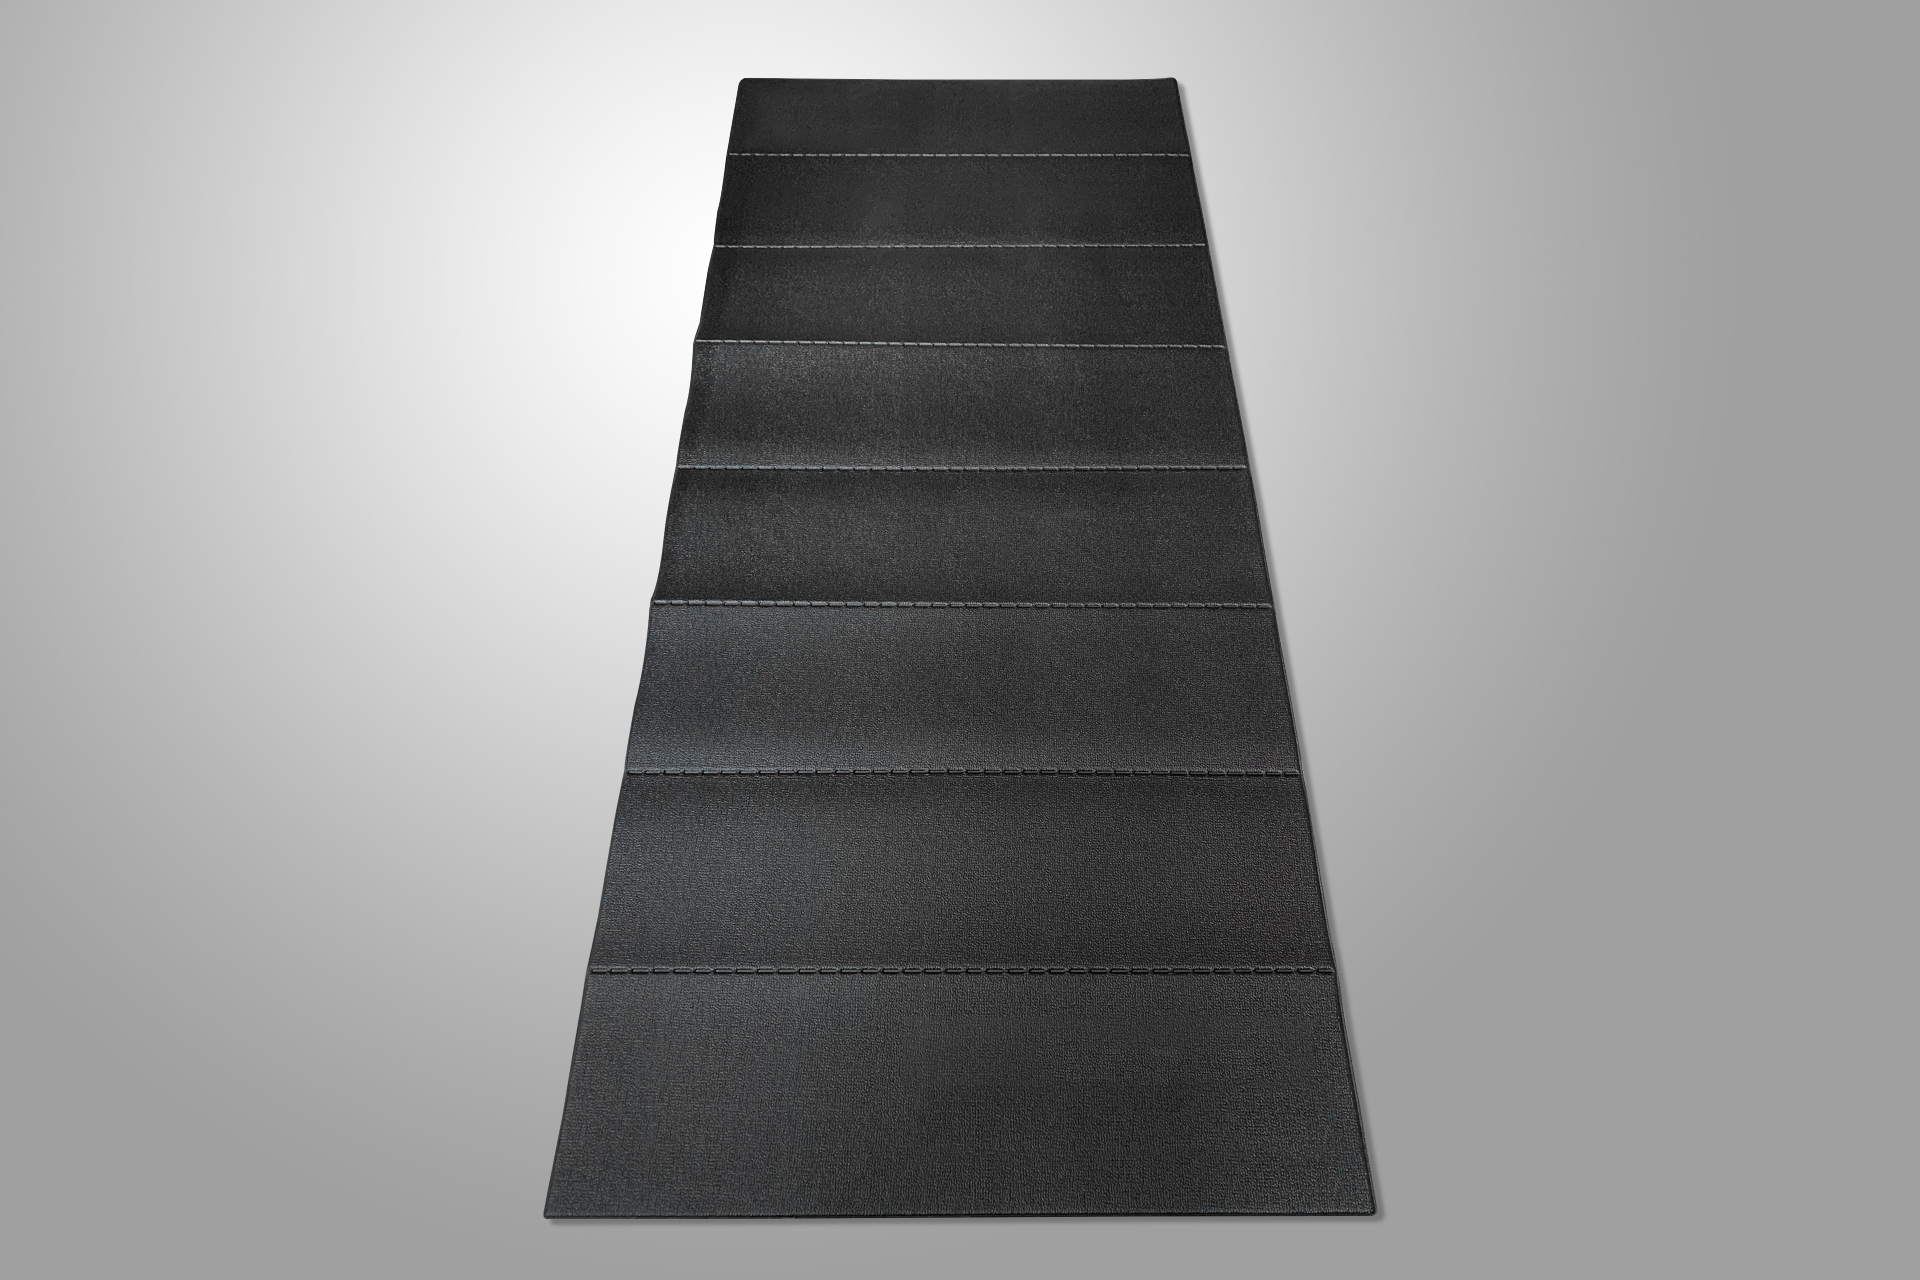 Equipment mat / heavy- duty mat/ protective mat /Treadmaill floor mat / Exercise equipment mat